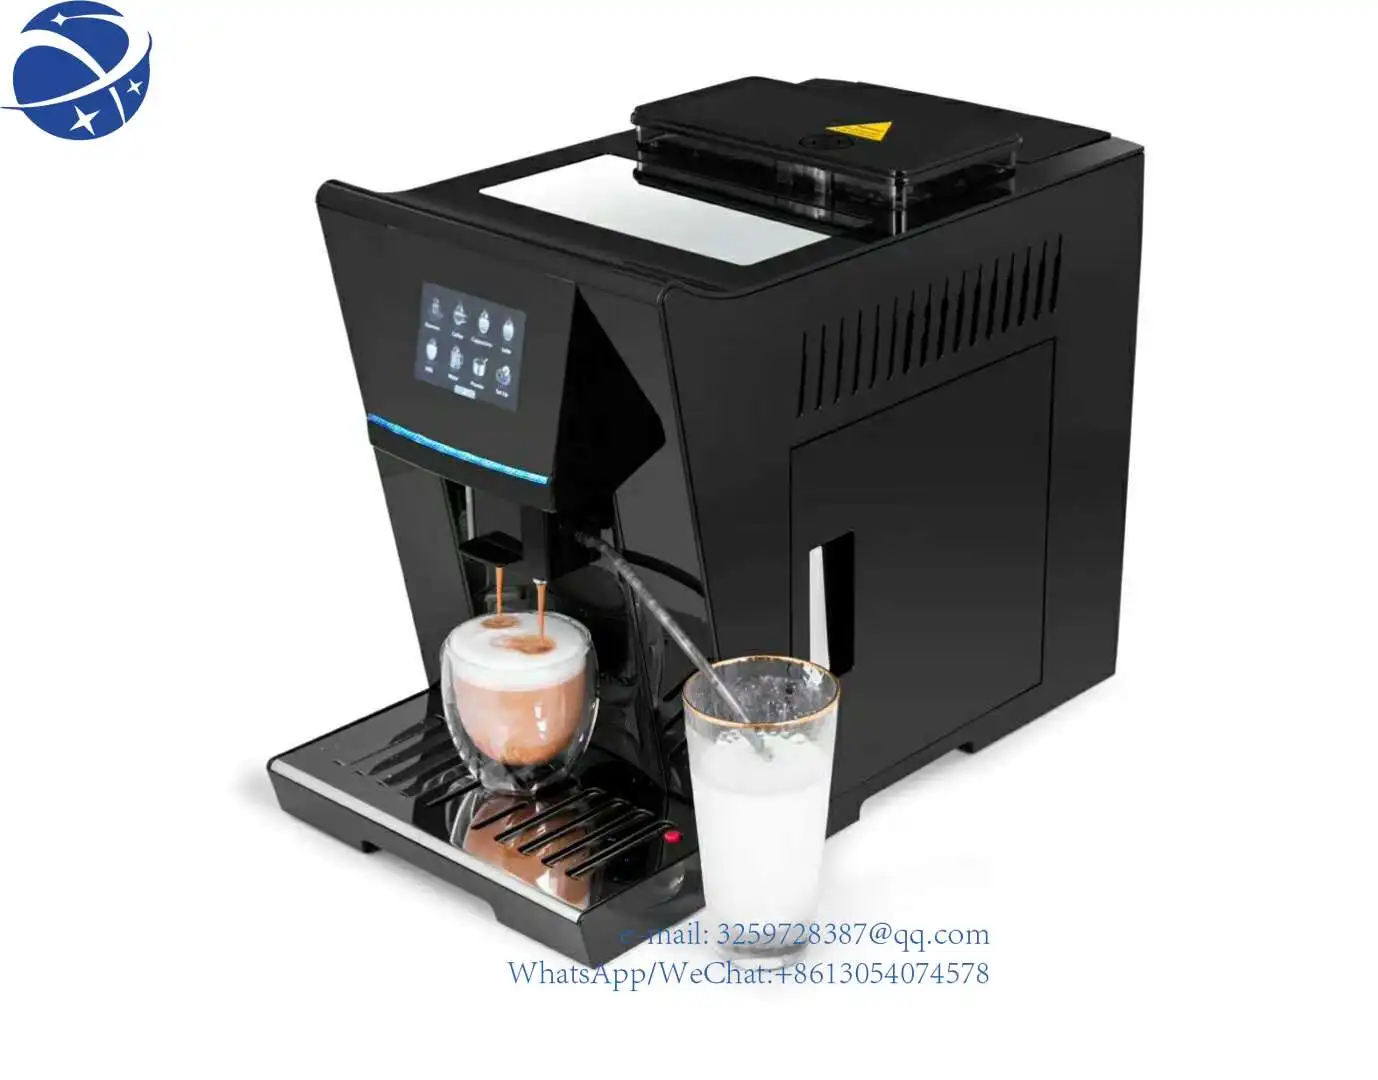 

Недорогая автоматическая кофемашина для эспрессо YYHC